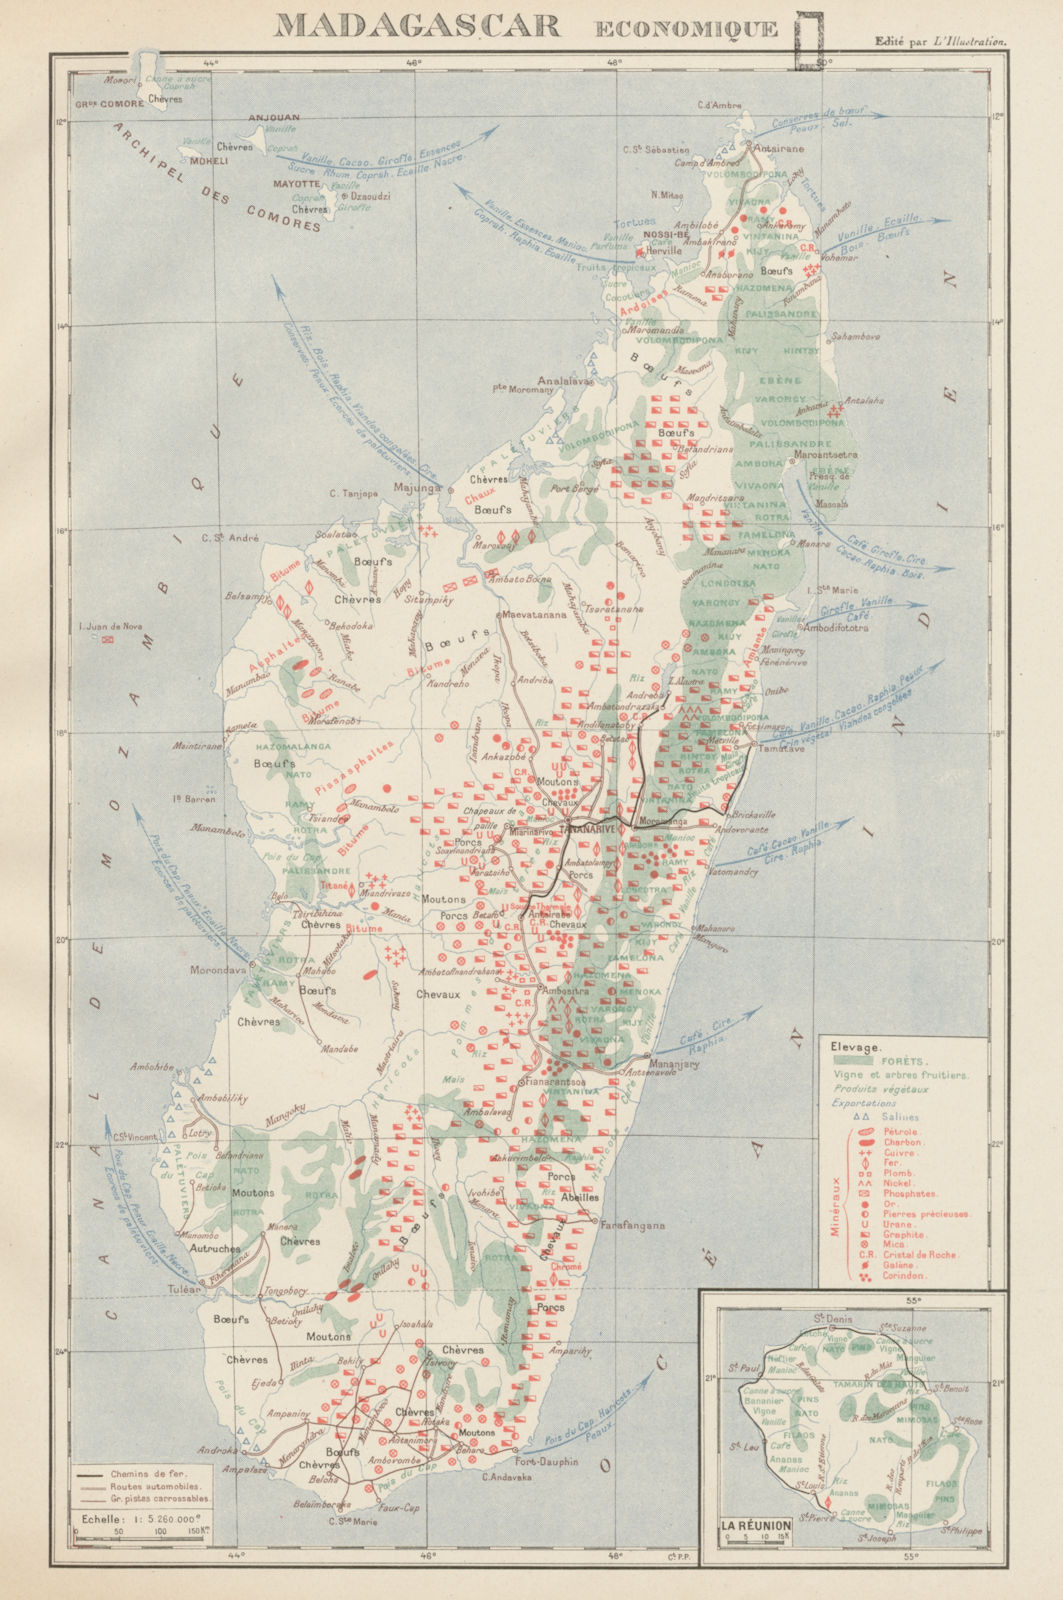 COLONIAL MADAGASCAR RESOURCES. Minerals Economique. Inset La Réunion 1929 map